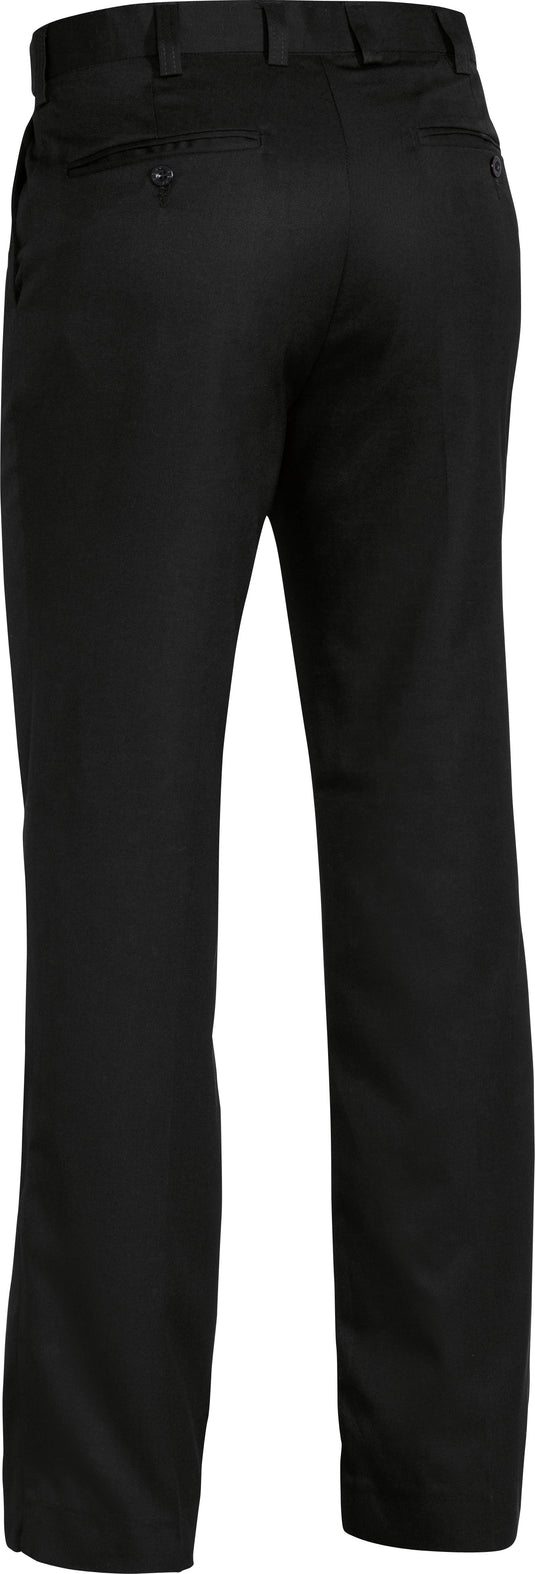 Wholesale BP6123D Bisley Mens Permanent Press Trouser - Regular Printed or Blank